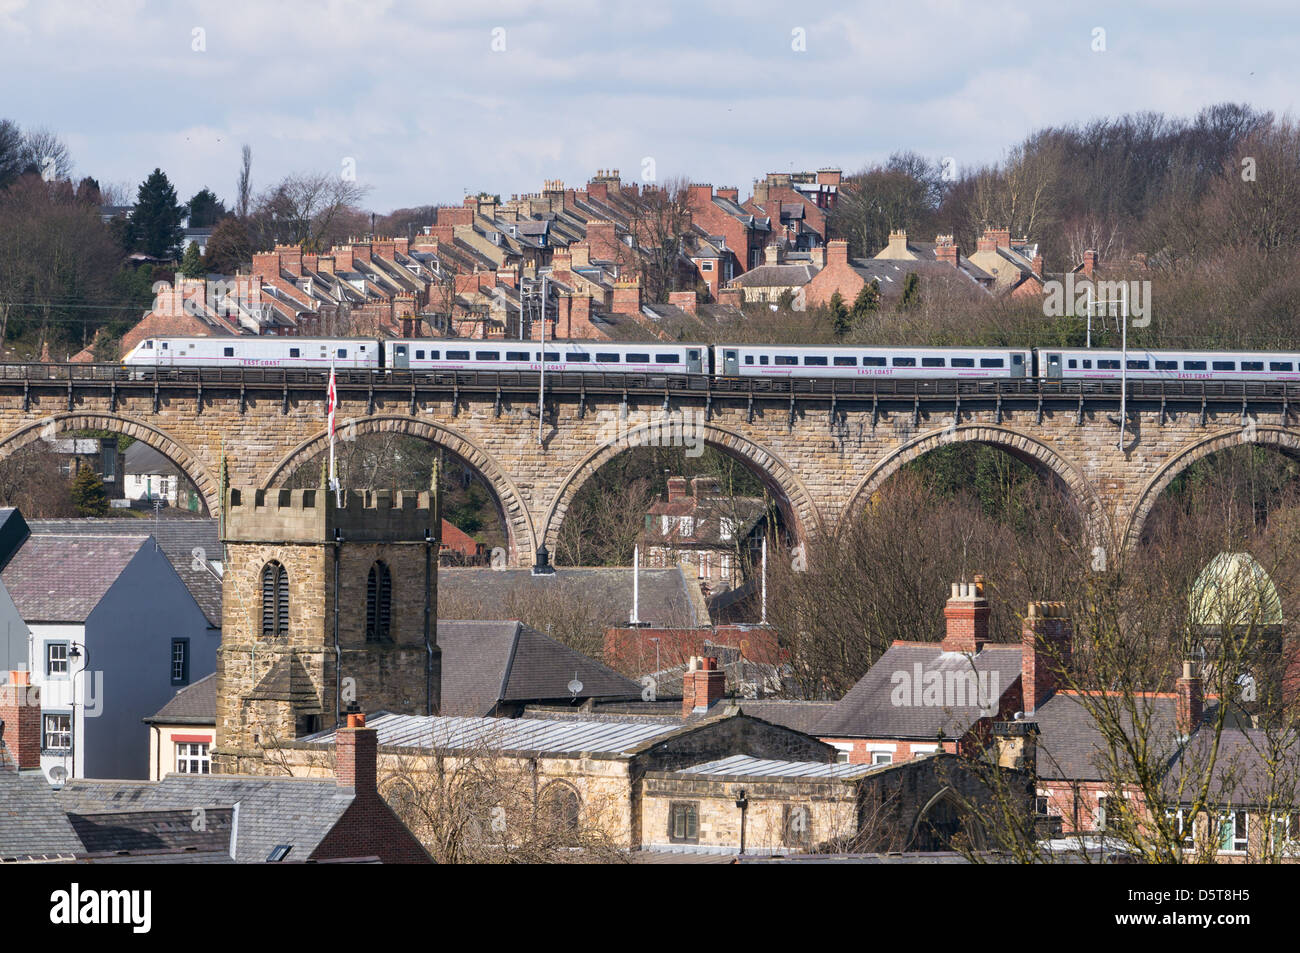 East coast express treno passeggeri attraversa Durham viadotto ferroviario North East England Regno Unito Foto Stock